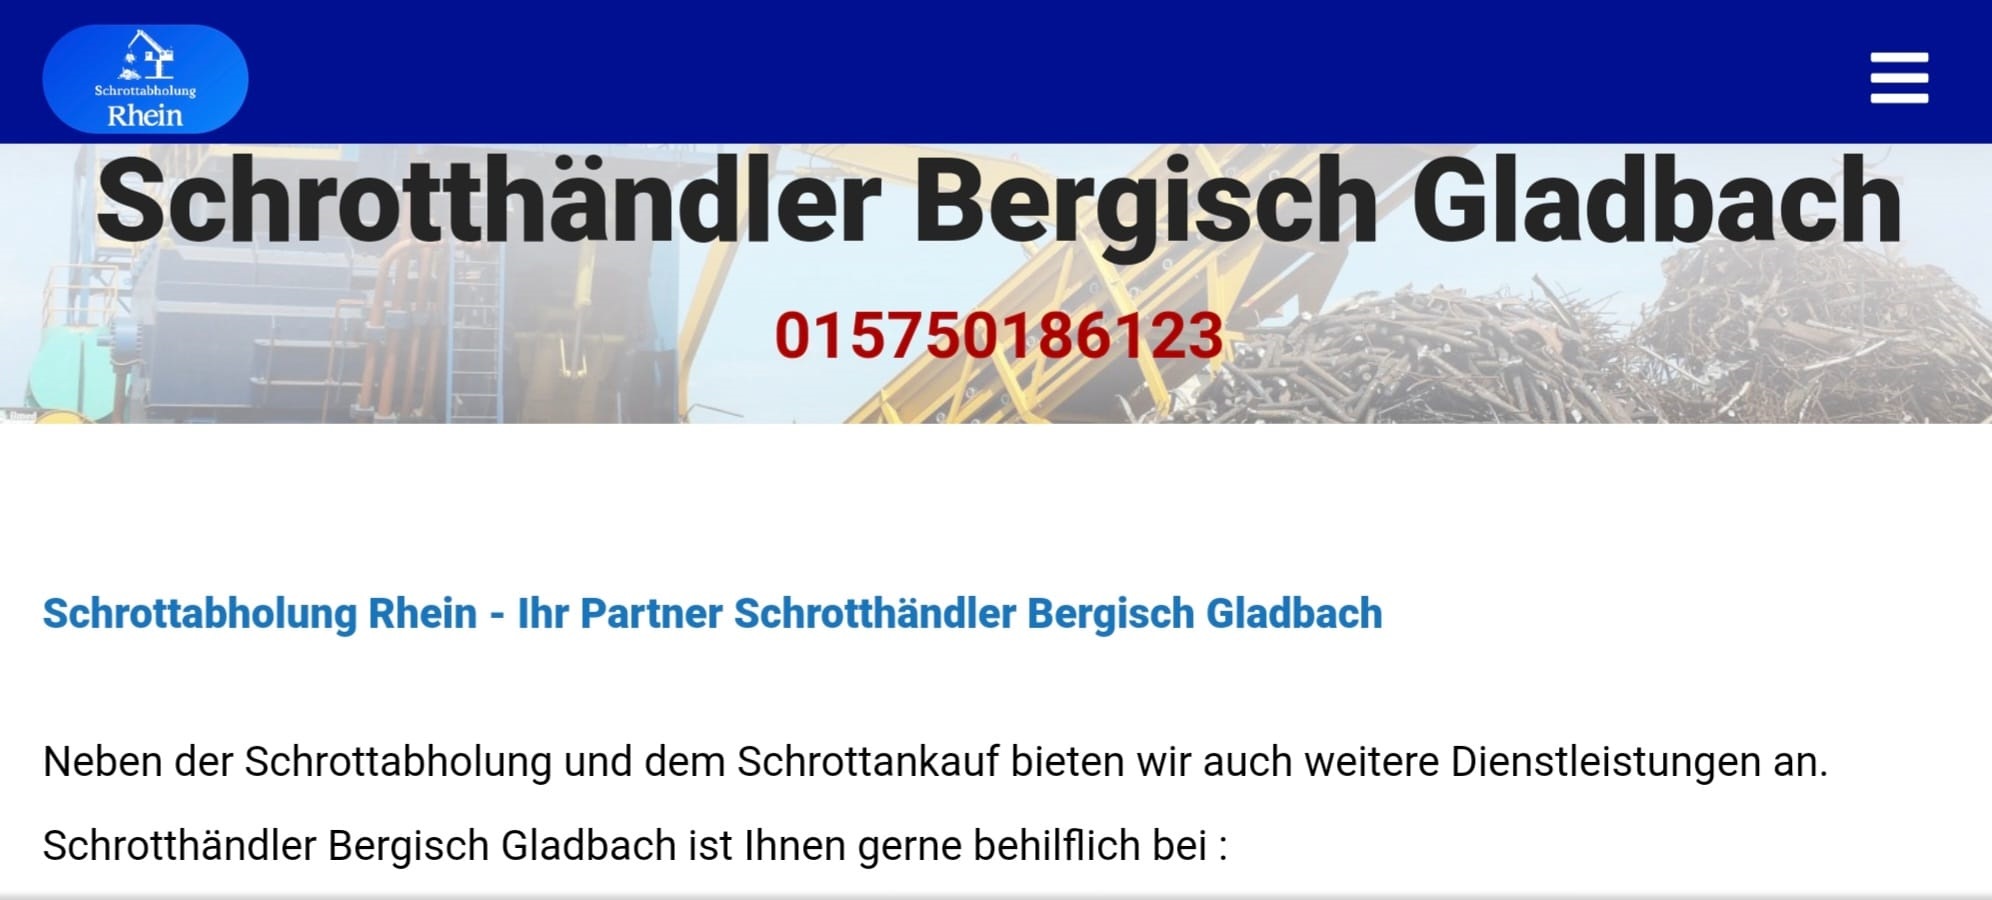 Schrotthaendler Bergisch Gladbach 265517a9 - Gegen gute Preise Schrottankauf und kostenlose abholen lassen mit Schrotthändler Bergisch Gladbach